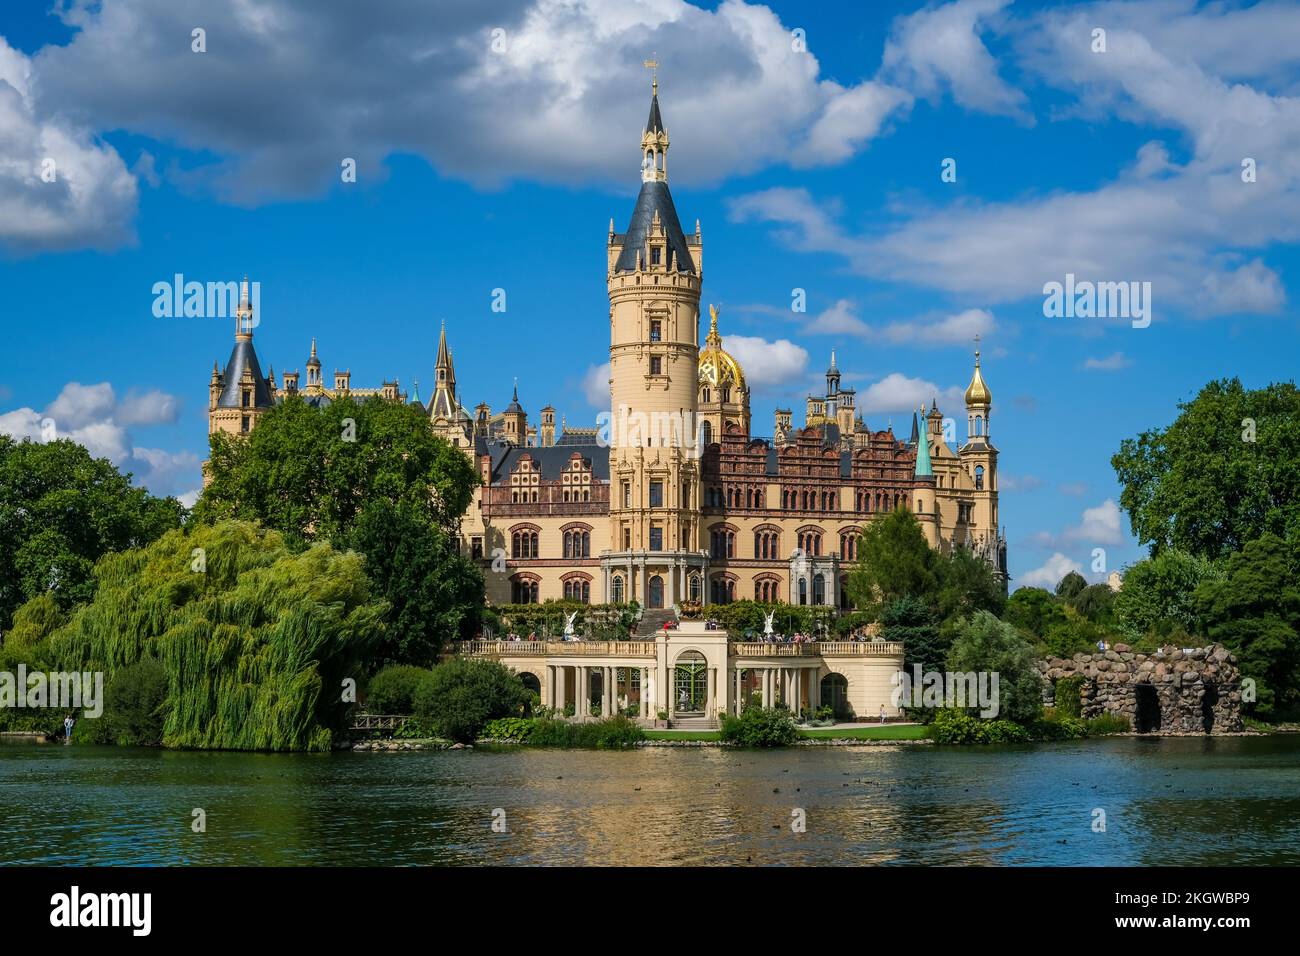 Schwerin, Mecklenburg-Vorpommern, Germania - il castello di Schwerin sul lago Schwerin, sede del parlamento di Stato del Mecklenburg-Vorpommern, era la residenza Foto Stock